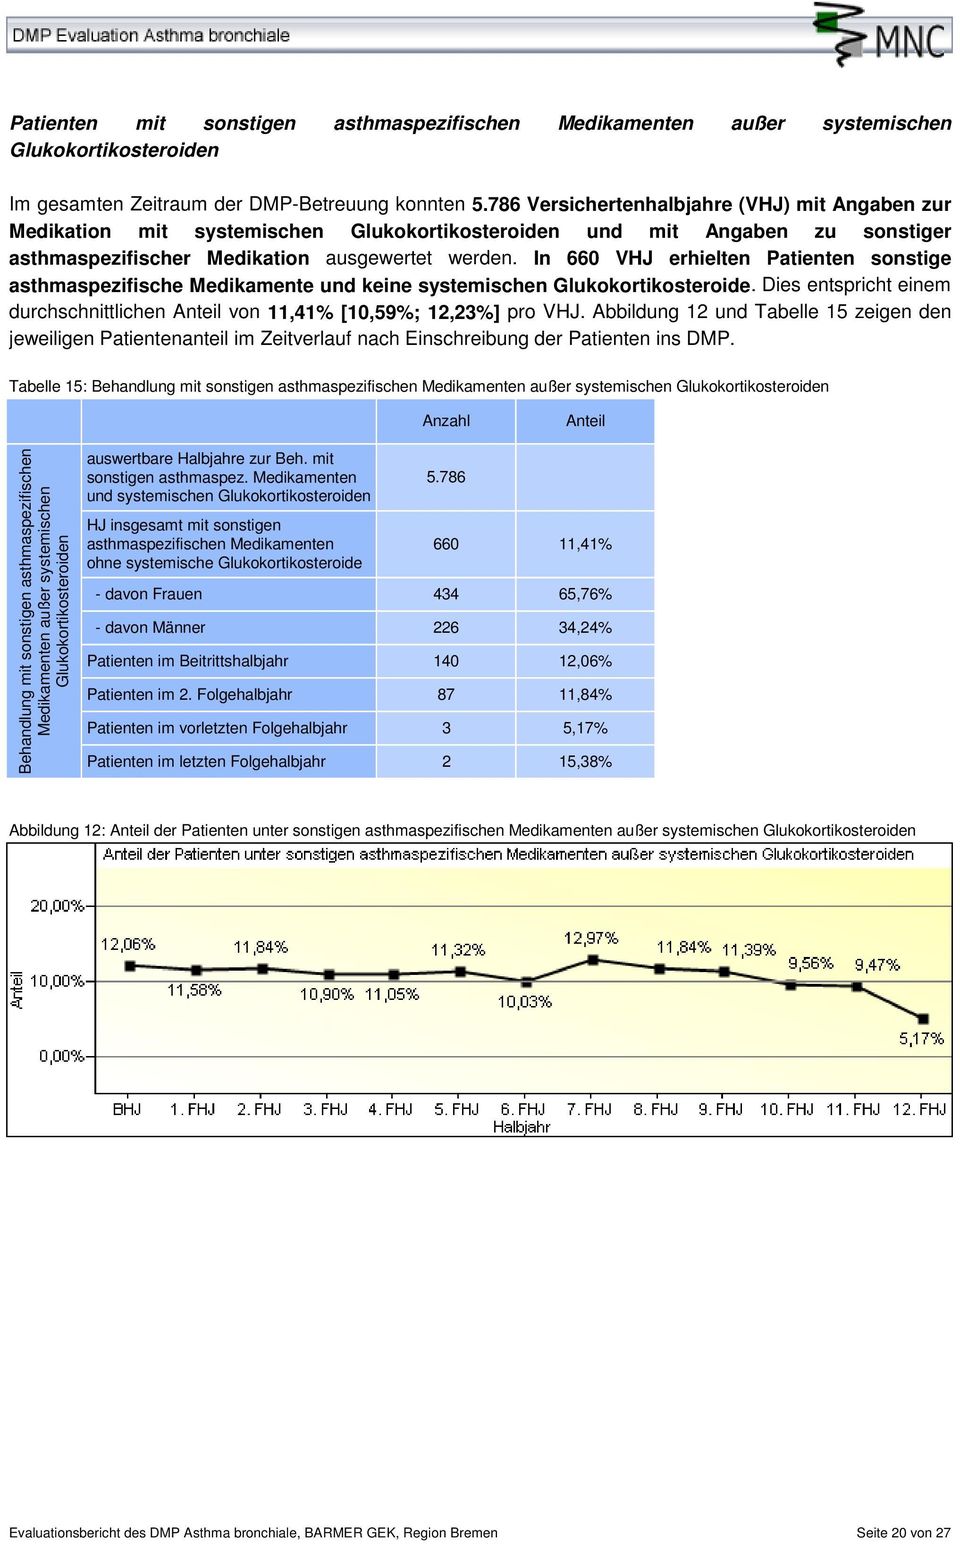 In 660 VHJ erhielten Patienten sonstige asthmaspezifische Medikamente und keine systemischen Glukokortikosteroide. Dies entspricht einem durchschnittlichen von 11,41% [10,59%; 12,23%] pro VHJ.